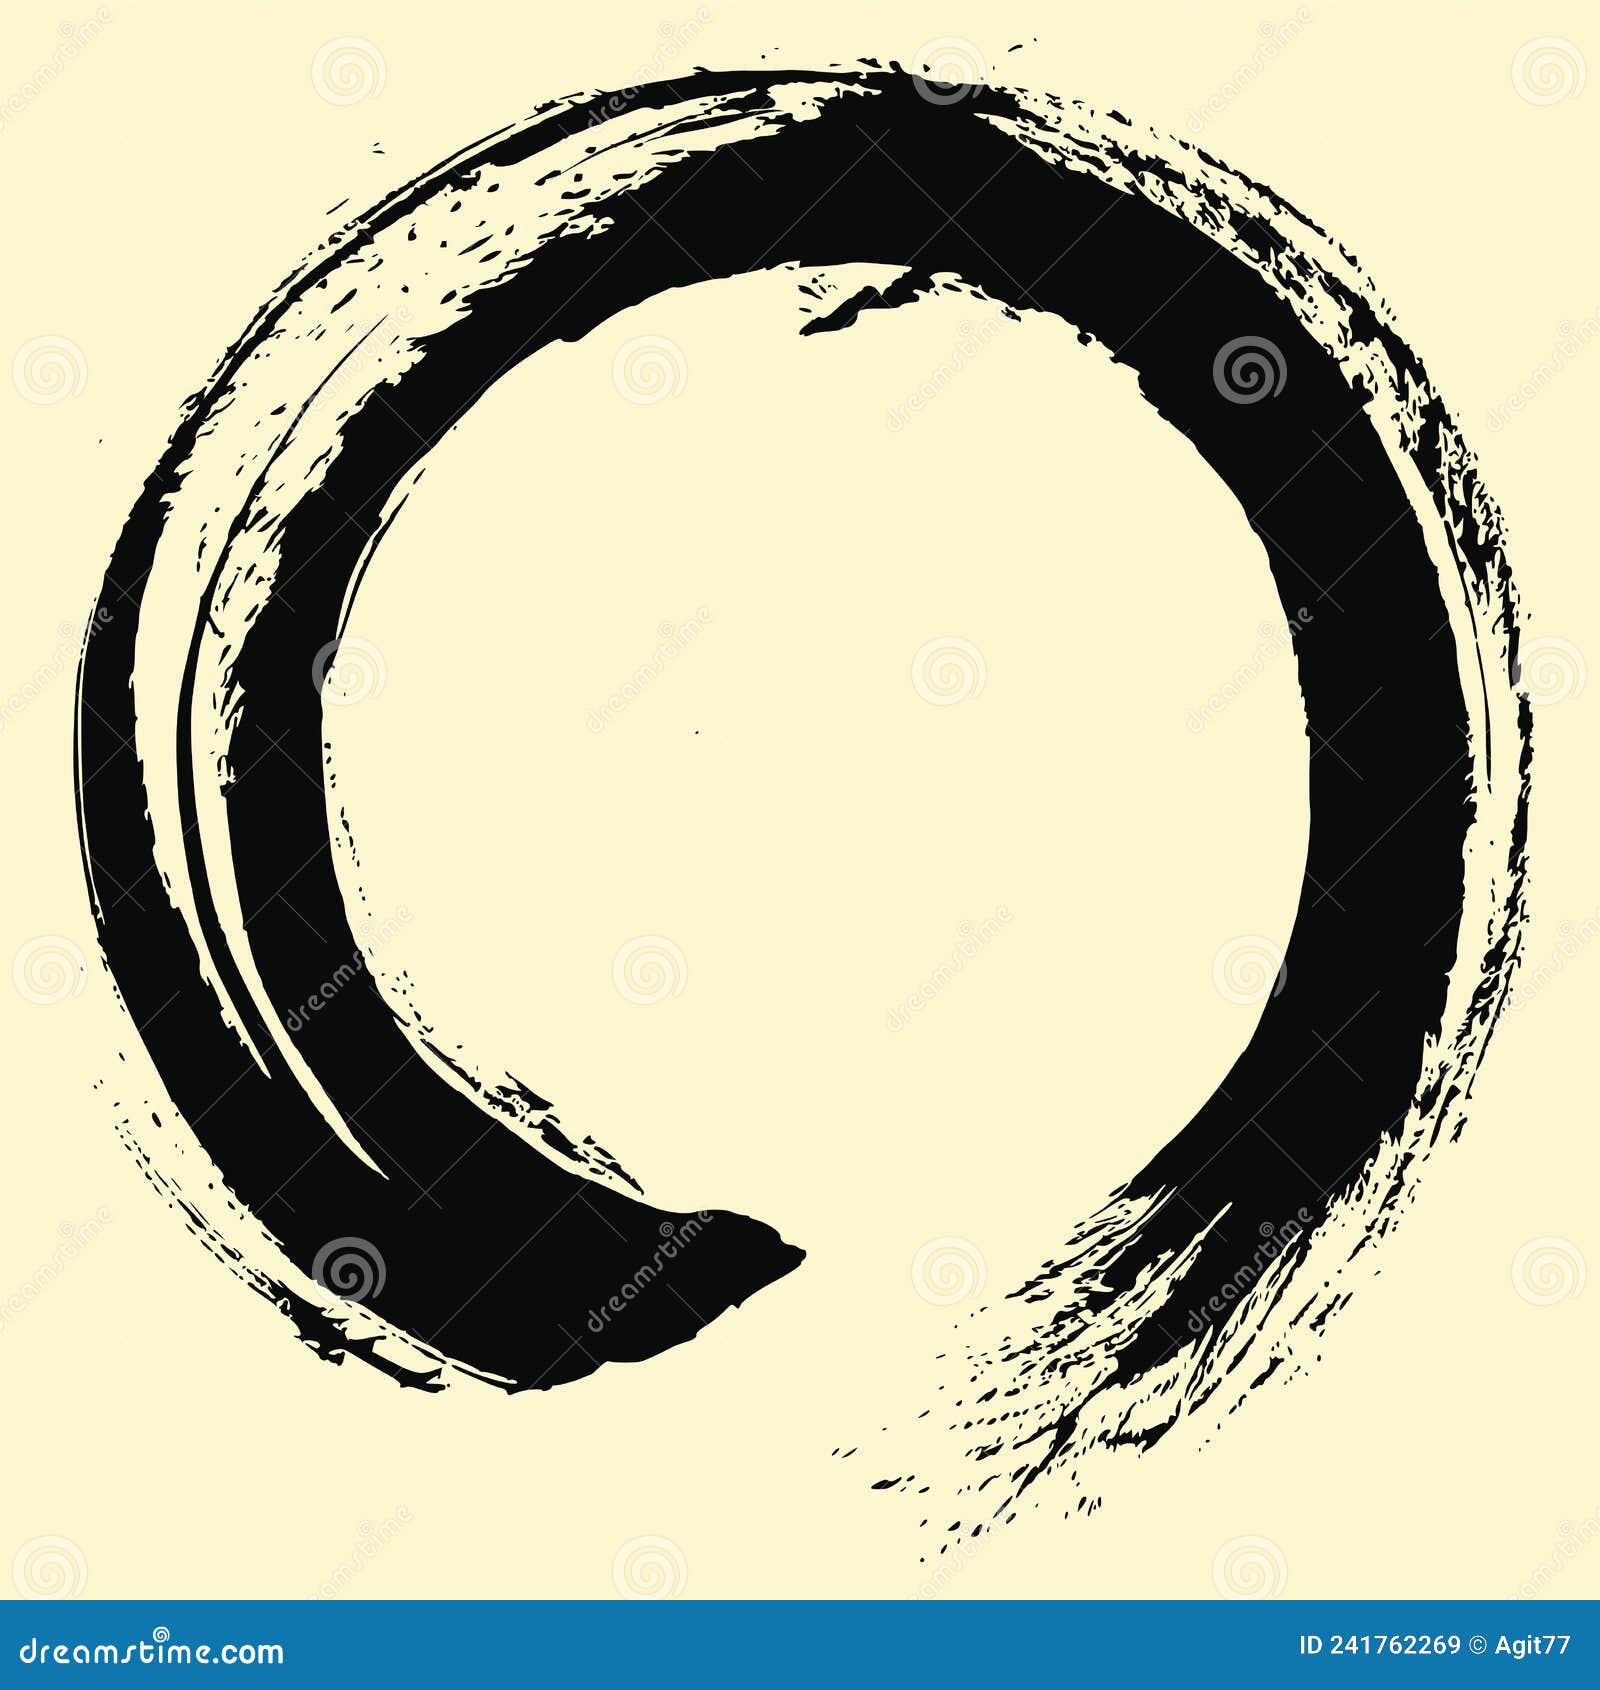 enso zen japanese circle brush sumi-e shodo   ink logo  